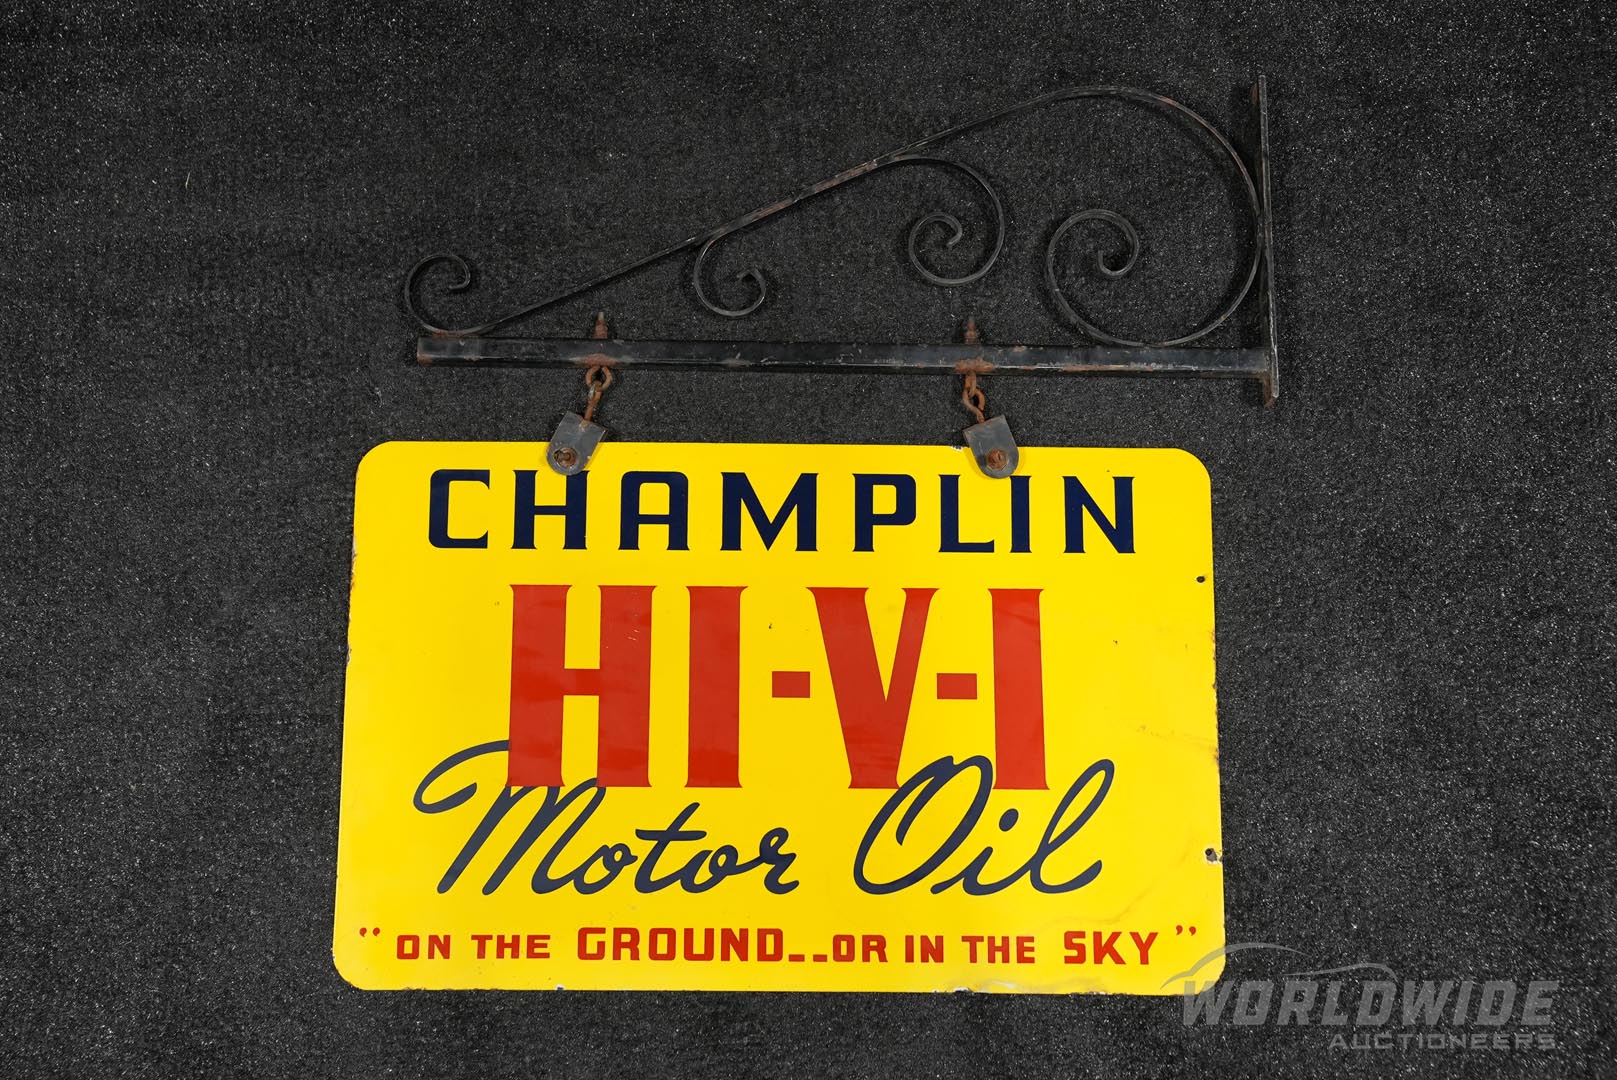  Champlin HI-V-I Motor Oil Doub le-Sided Porcelain Sign with Hanger 